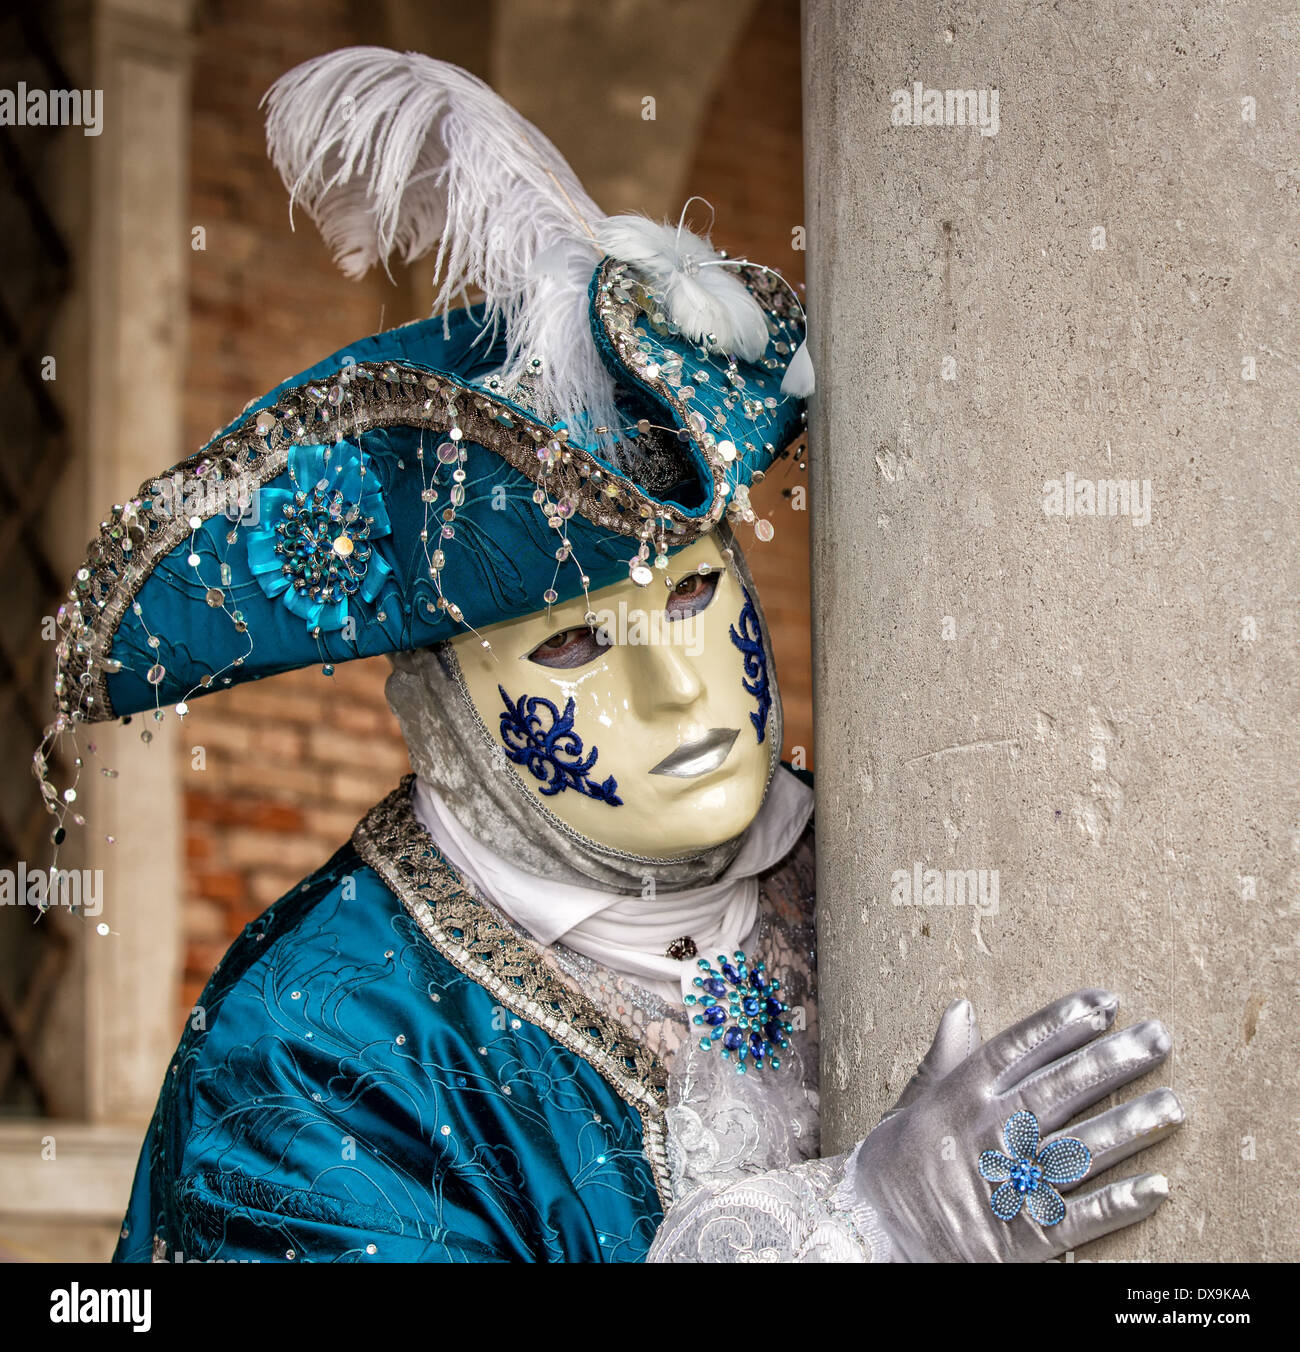 Venecia, Italia, 2013 - Persona con máscara de carnaval veneciano. 4740546  Foto de stock en Vecteezy